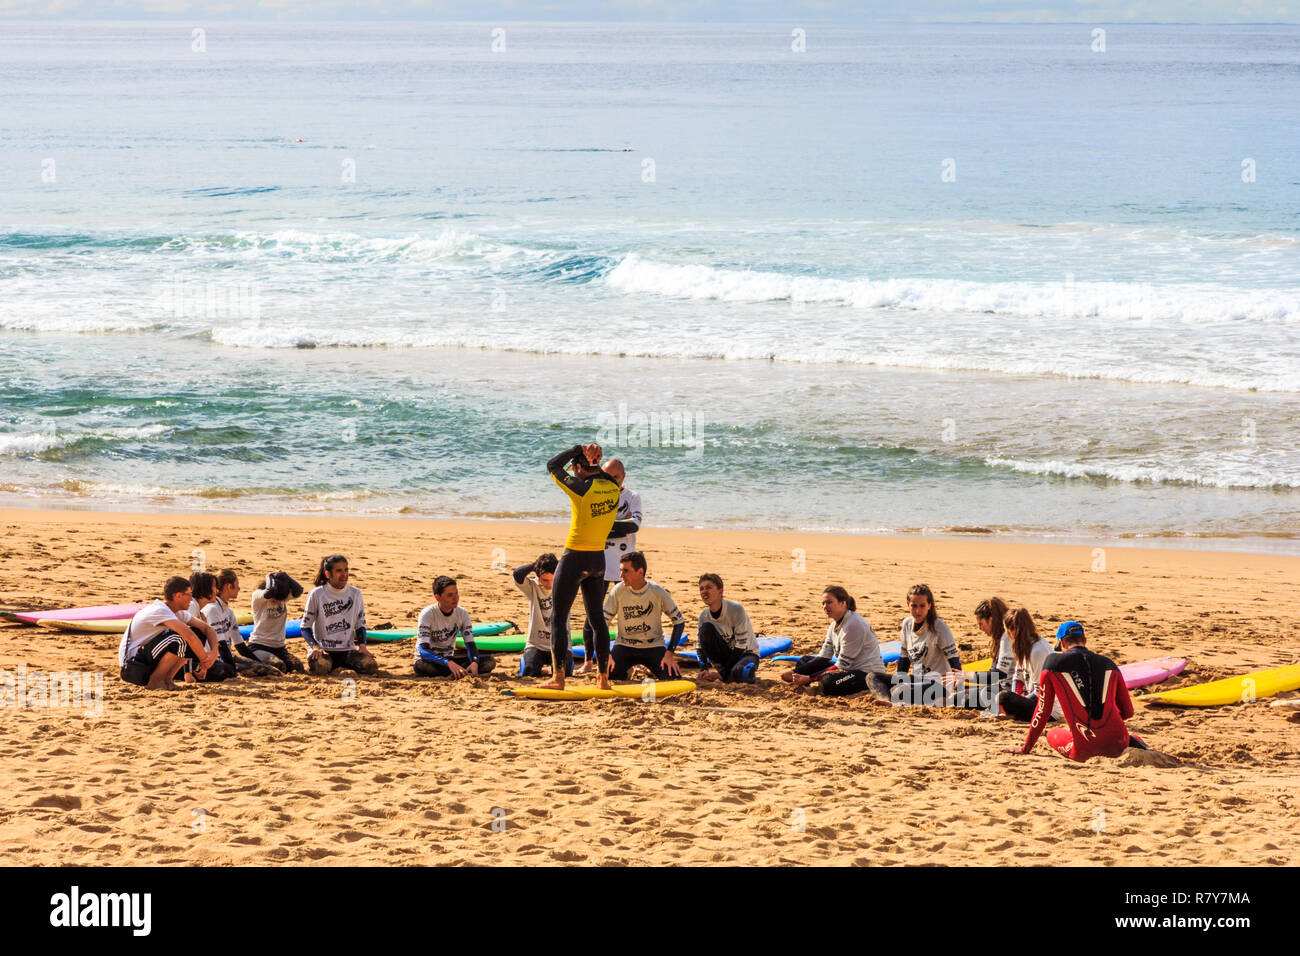 Manly, Australien - 12. Juni 2015: Junge Menschen, die an einer Surfschule am Strand. Surfen ist eine beliebte Aktivität. Stockfoto